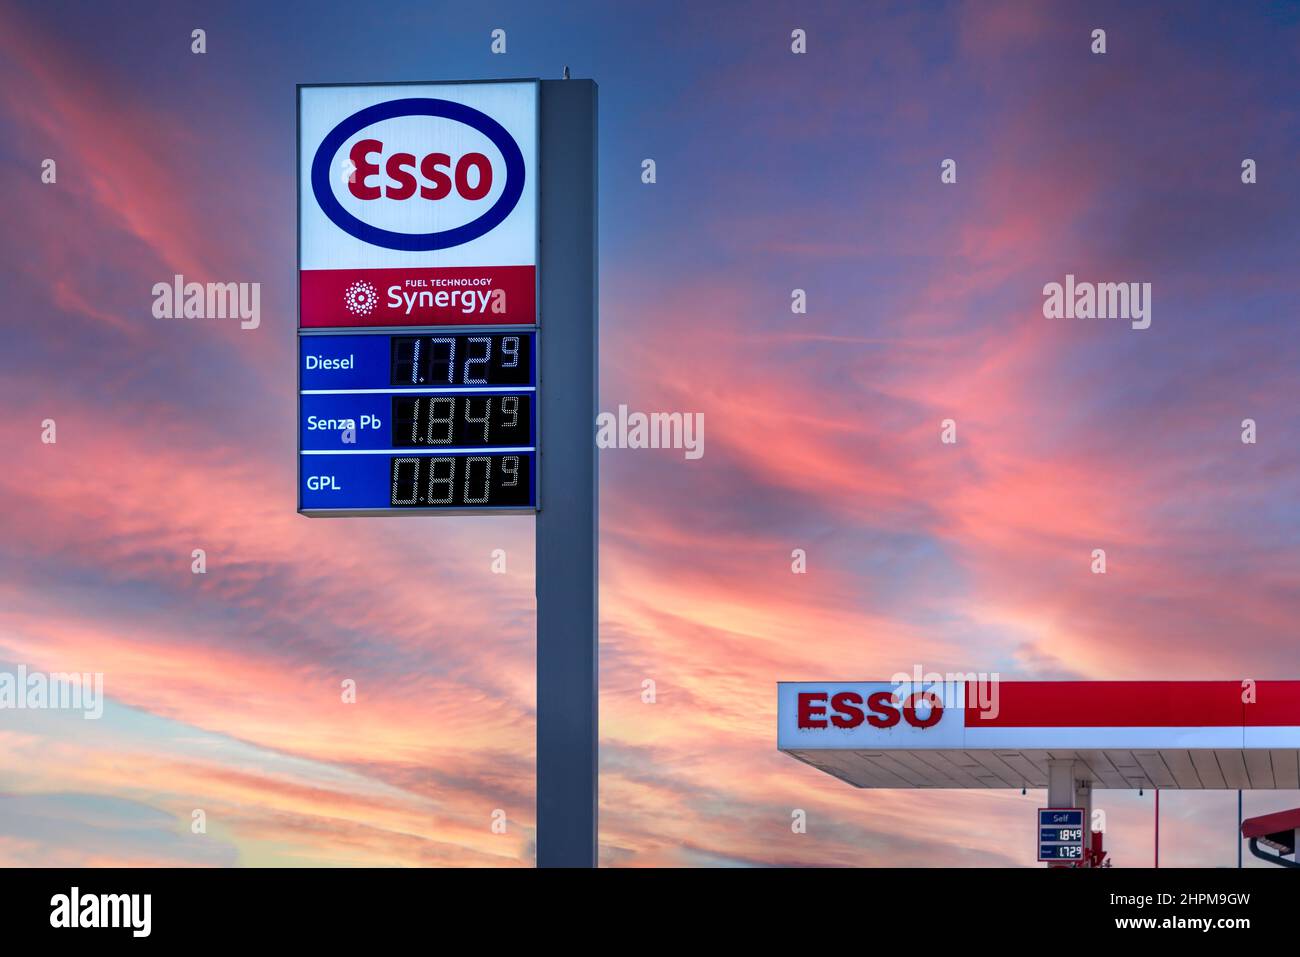 Fossano, Italie - 22 février 2022 : logo Esso avec fuel Euro prix affiché sur le ciel de coucher de soleil coloré, Esso est une marque de l'industrie pétrolière mondiale gi Banque D'Images